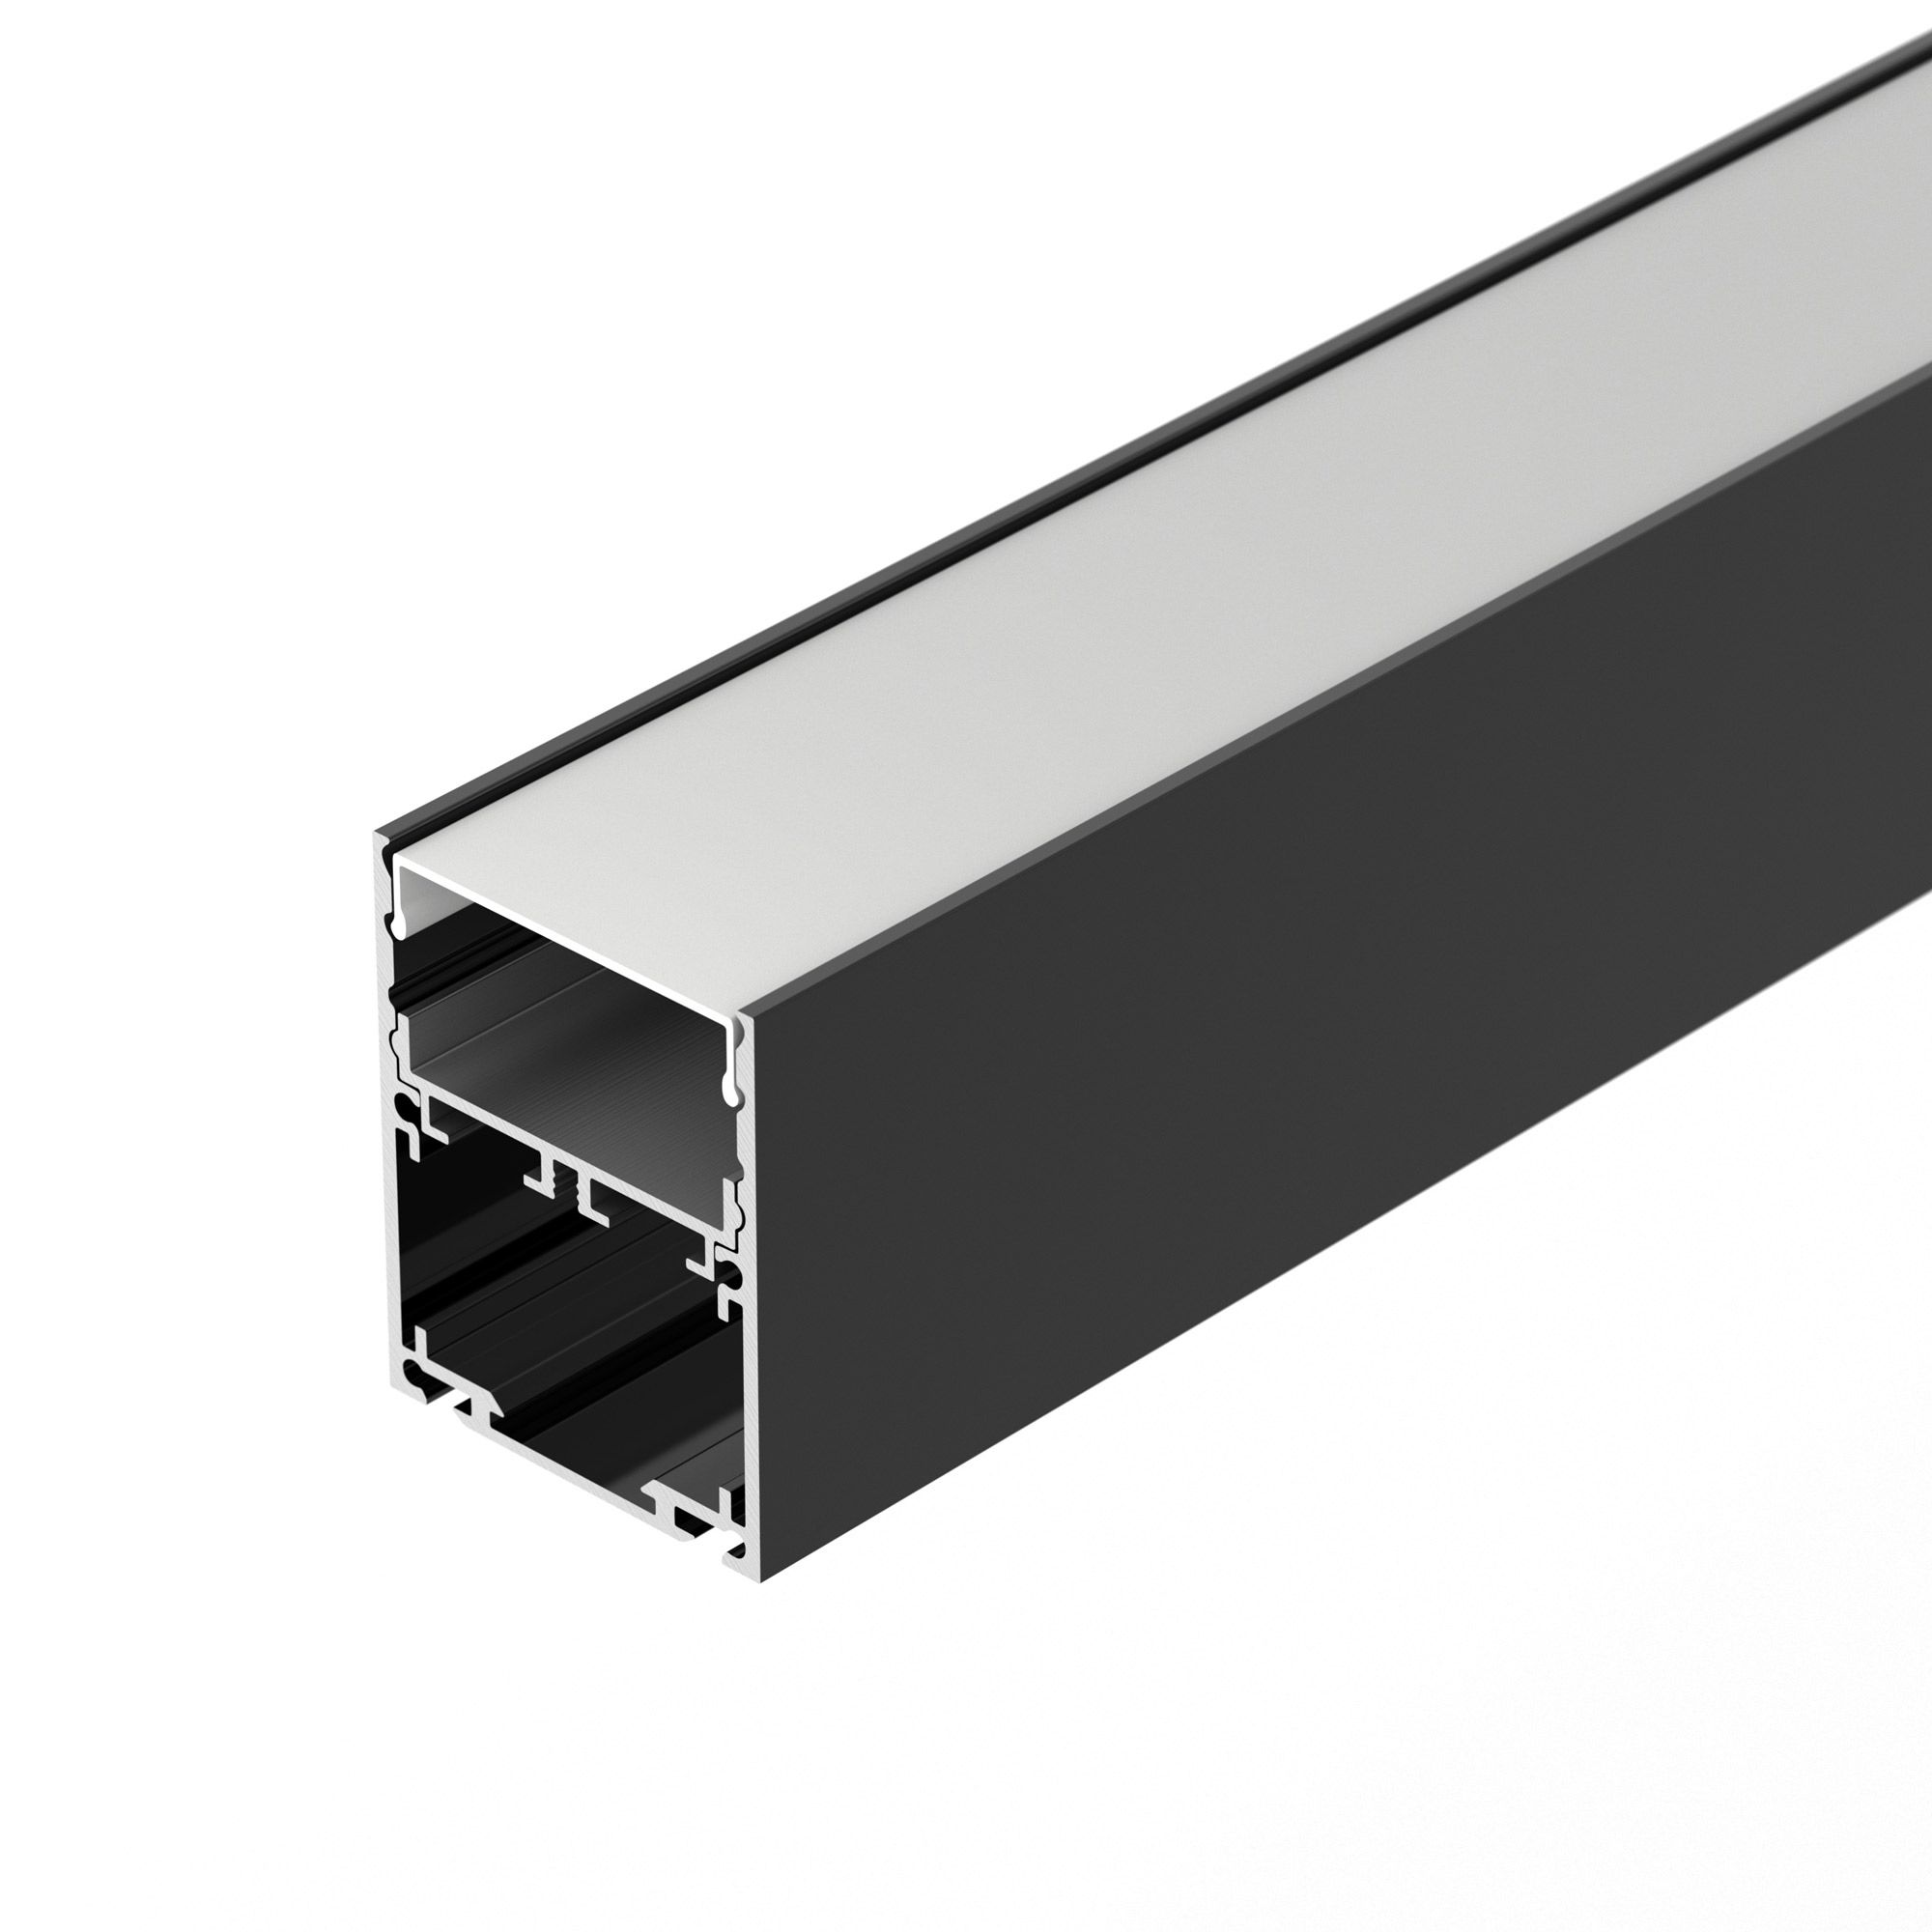 Профиль SL-LINE-4050-3L-2000 ANOD BLACK (Arlight, Алюминий) соединитель профиля sl line s2 line seamless arlight металл